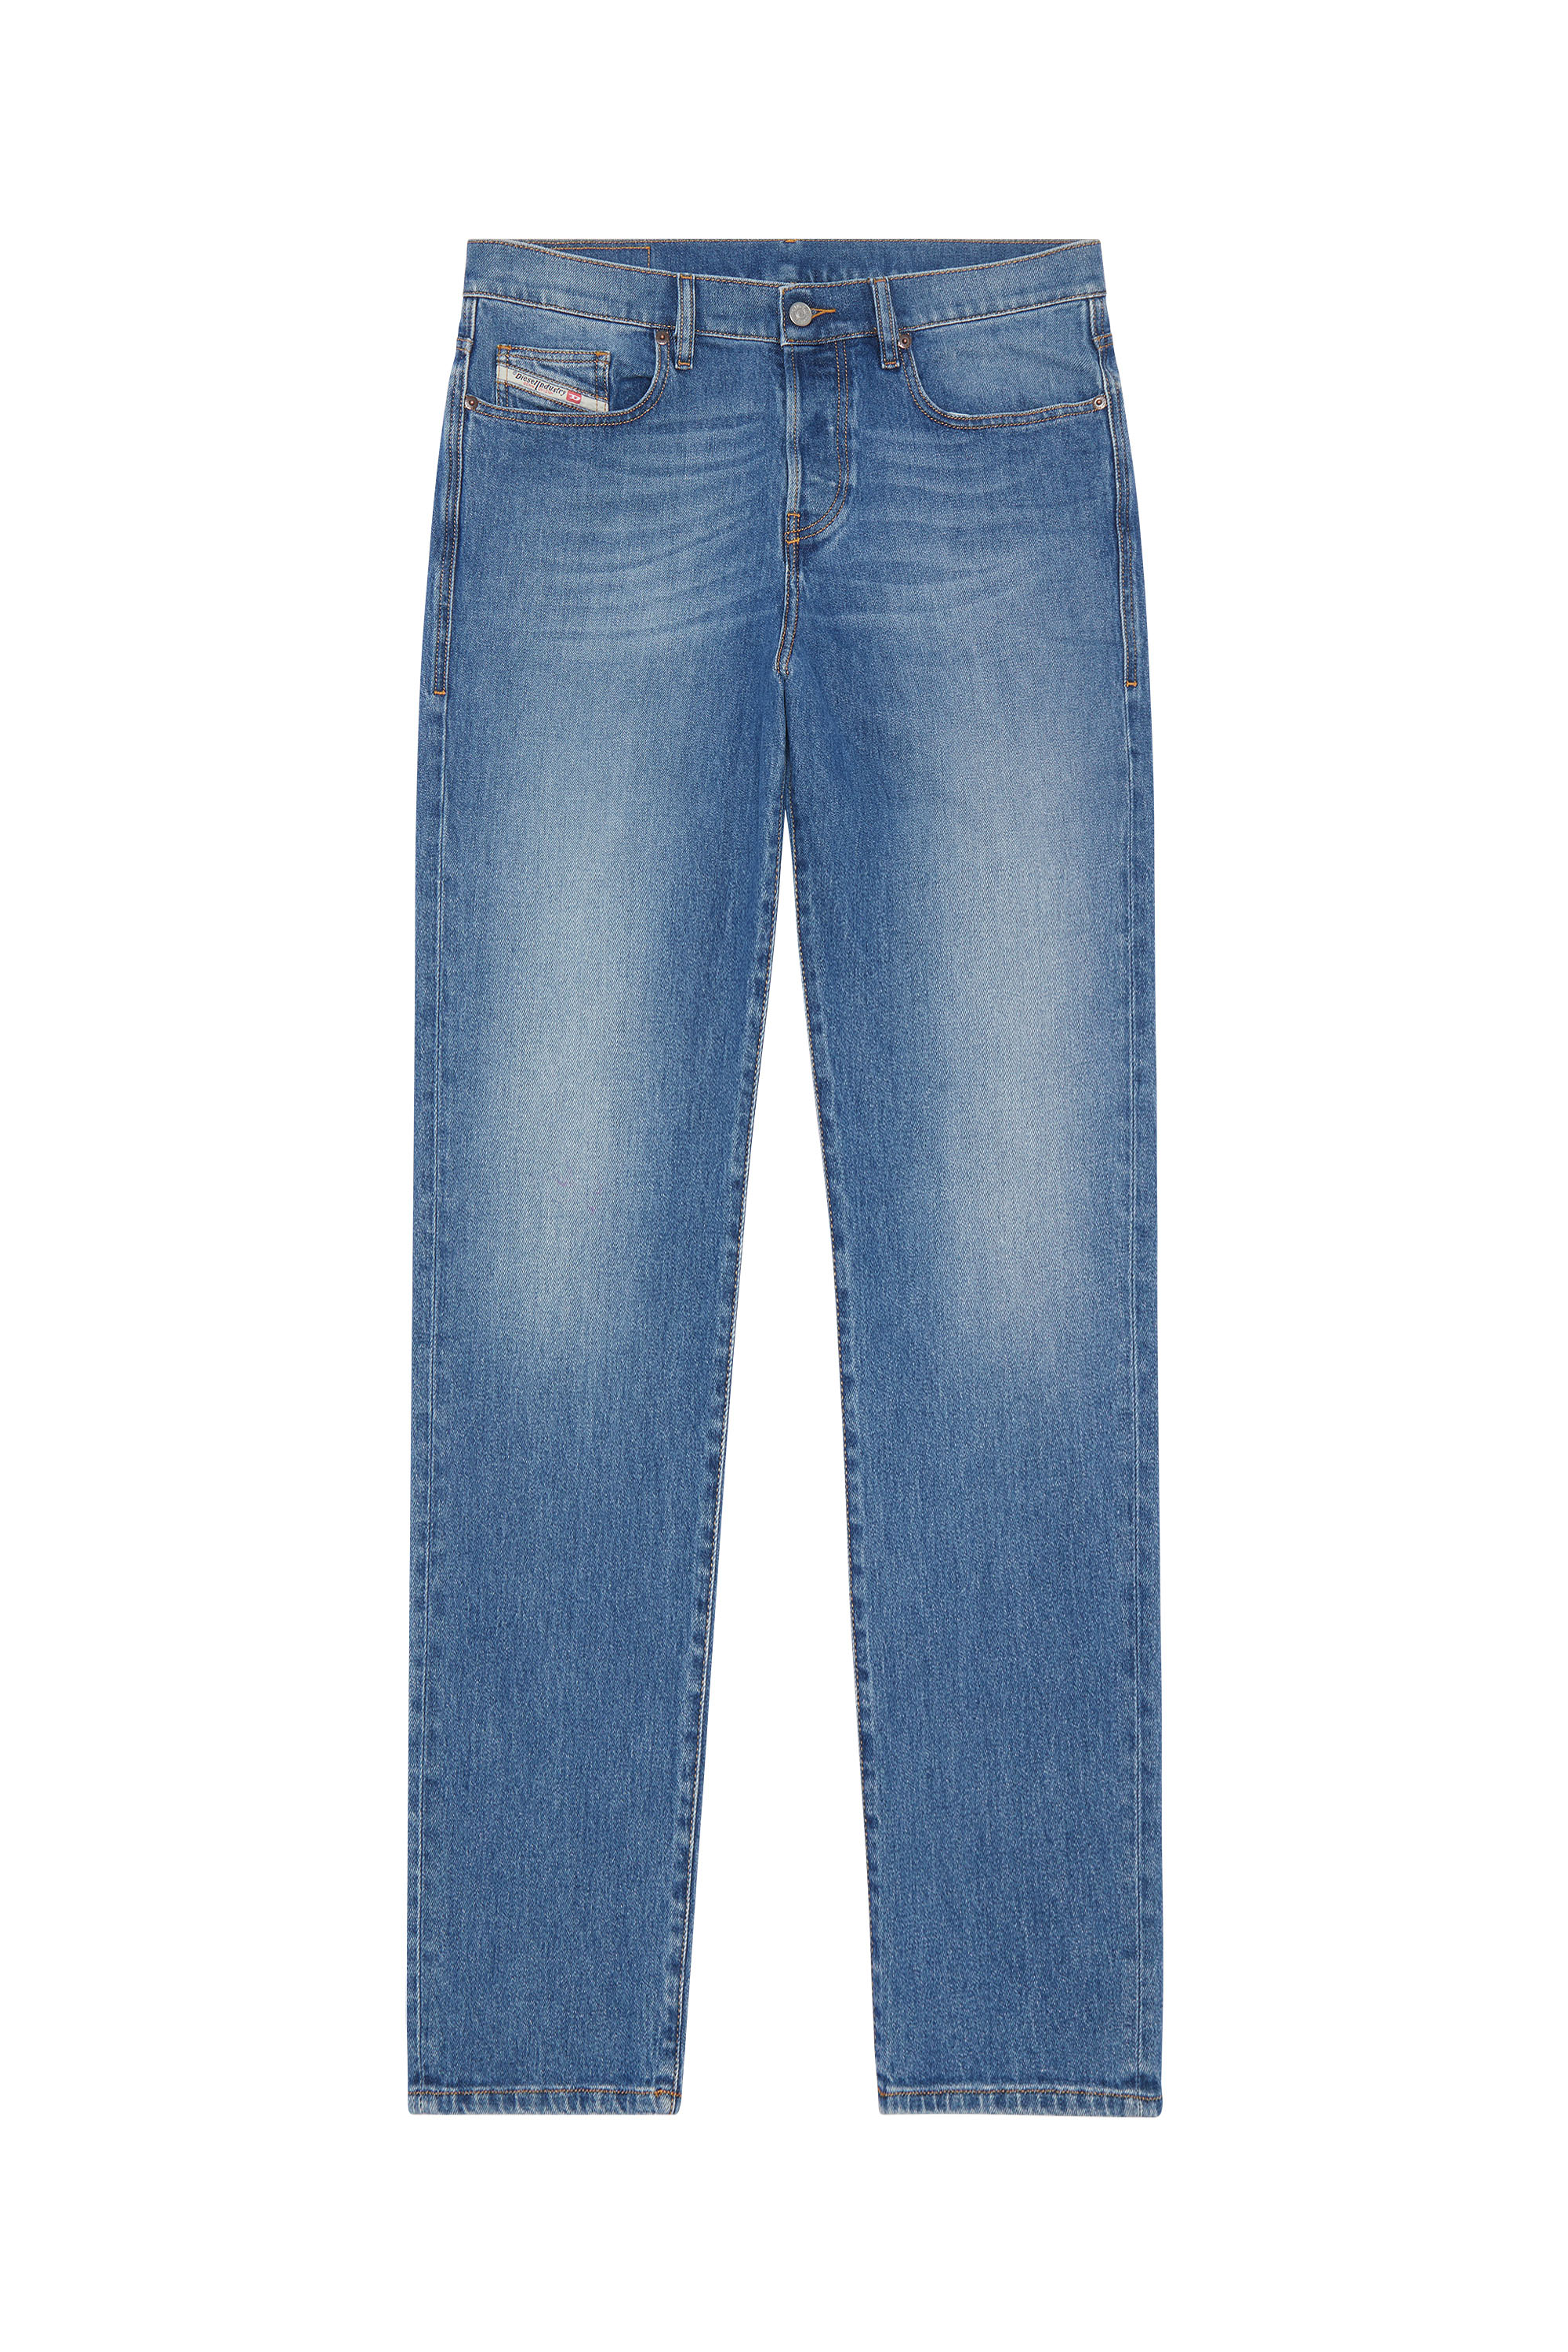 Men's Straight Jeans | Medium blue | Diesel 2020 D-Viker